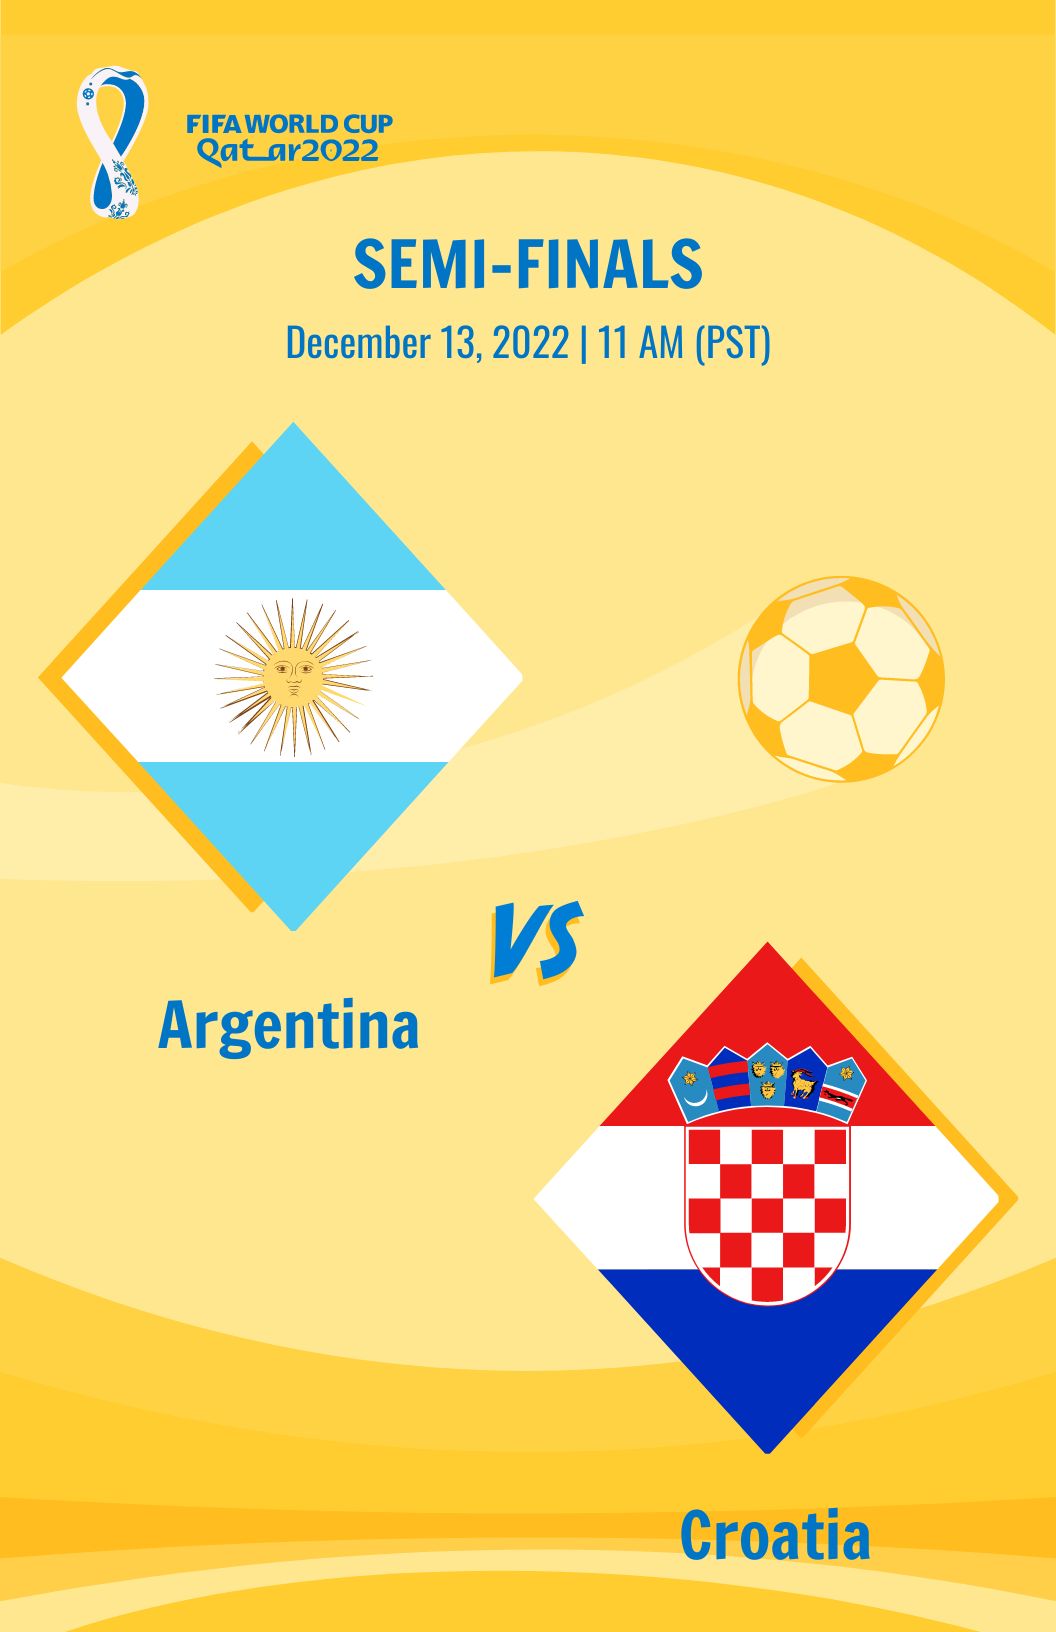 World Cup 2022 Semi-Finals Argentina Vs Croatia Poster